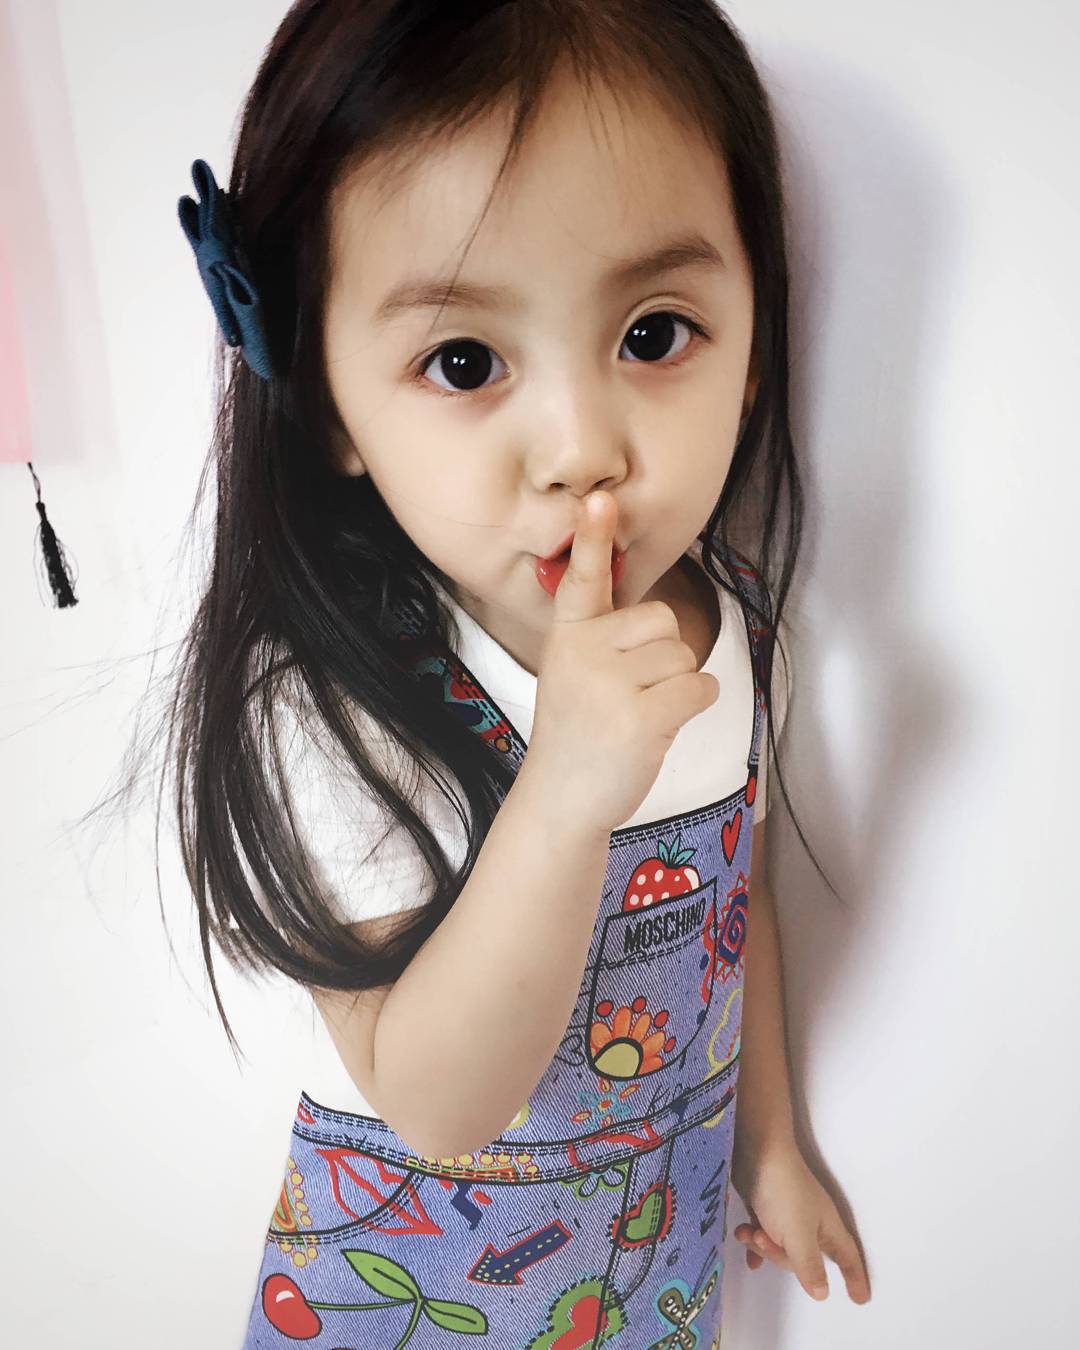 Những hình ảnh em bé Trung Quốc xinh sành điệu sẽ khiến bạn cảm thấy say đắm vì những bộ đồ tinh tế và phong cách. Chắc chắn bạn sẽ không muốn bỏ lỡ cơ hội được ngắm nhìn những \